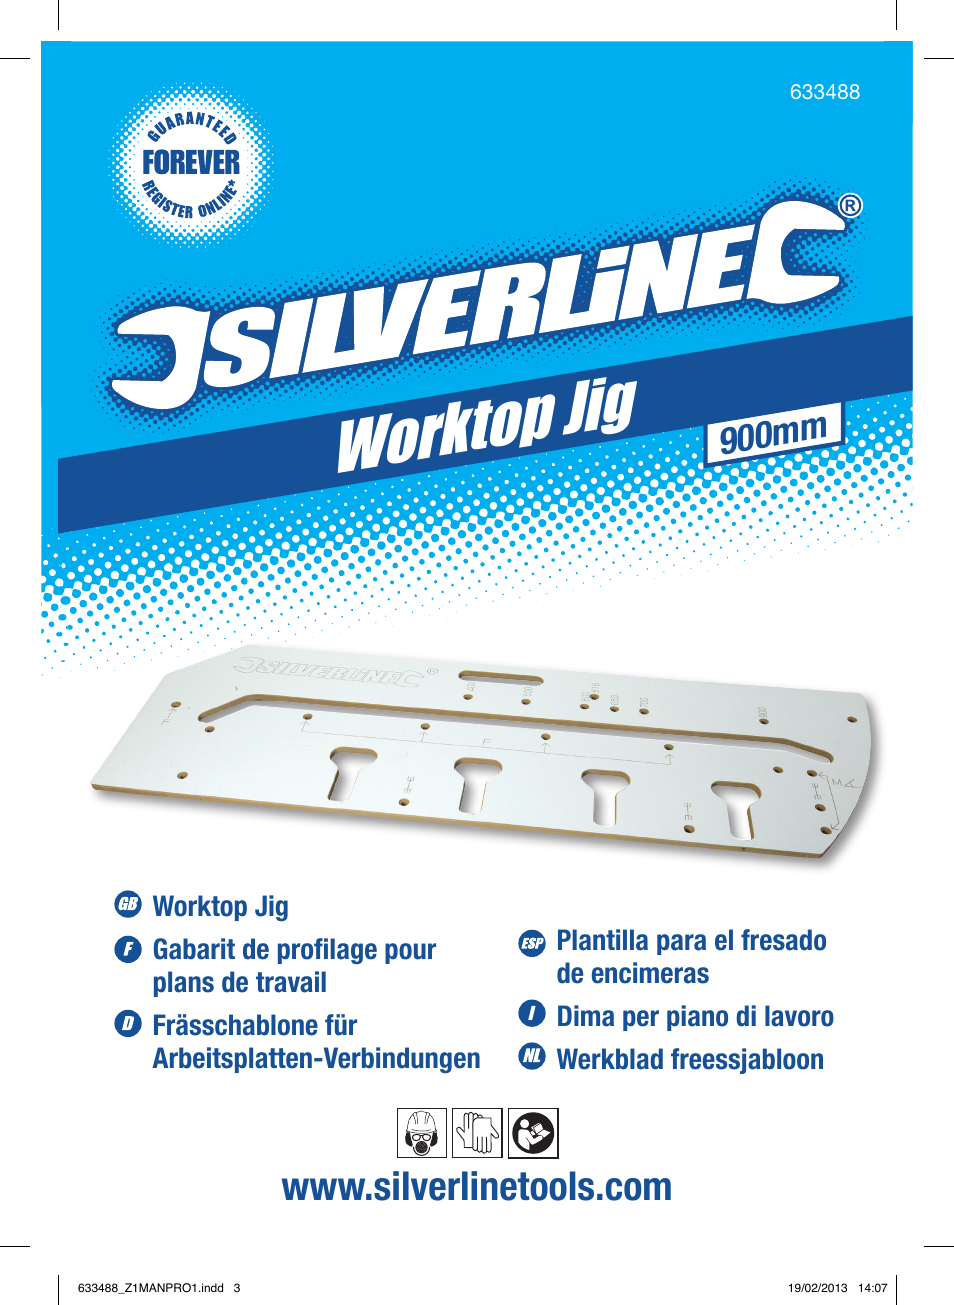 Worktop jig, 900mm | Silverline Worktop Jig User Manual | Page 2 / 28